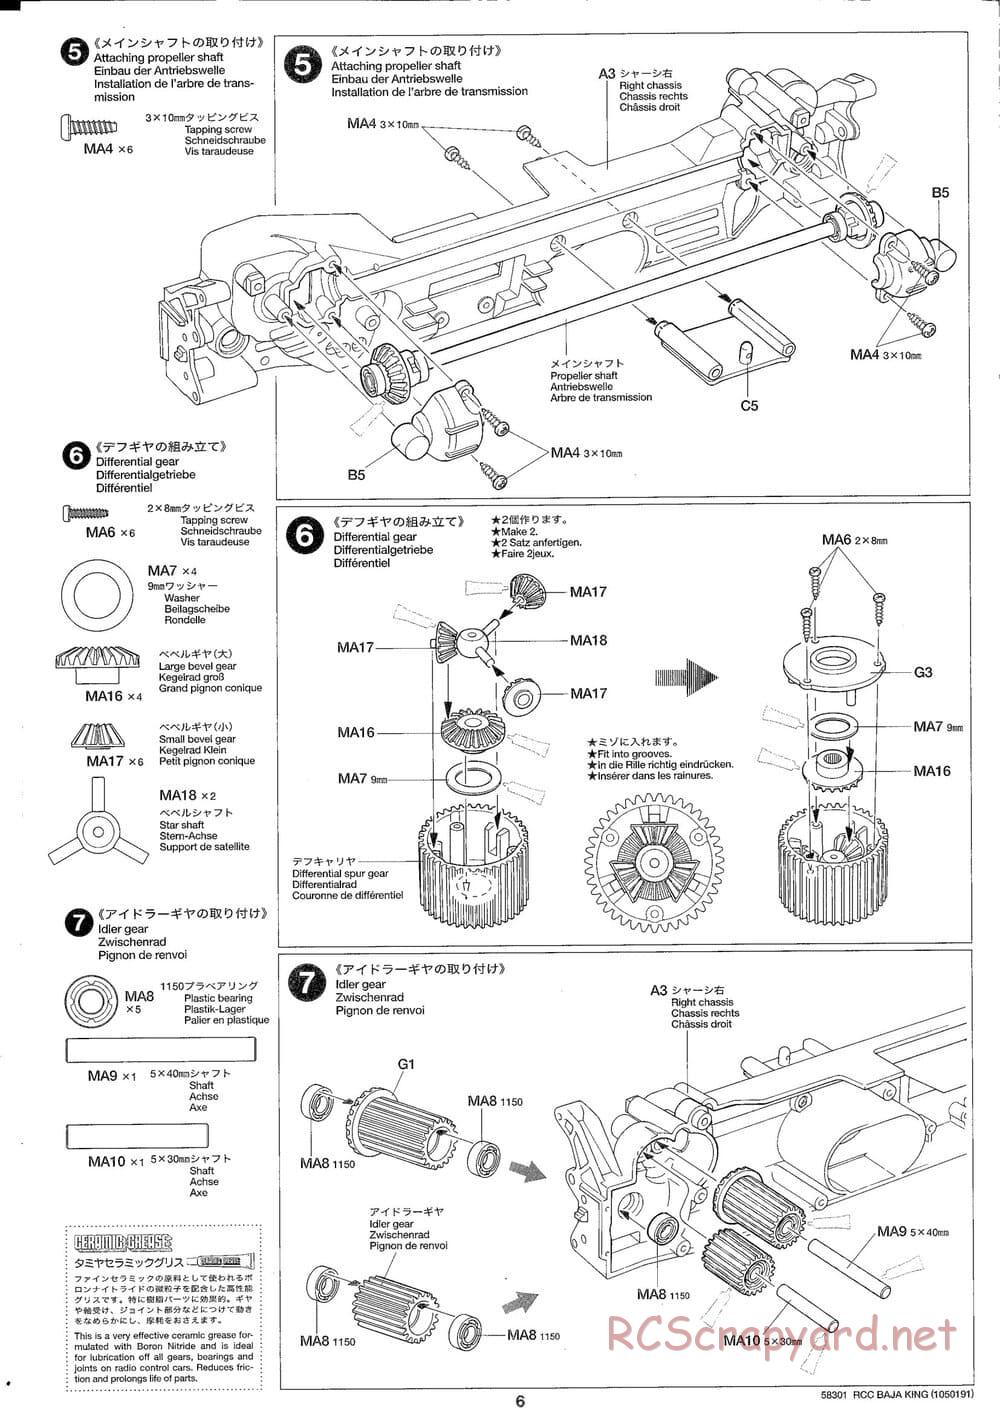 Tamiya - Baja King - TL-01B Chassis - Manual - Page 6